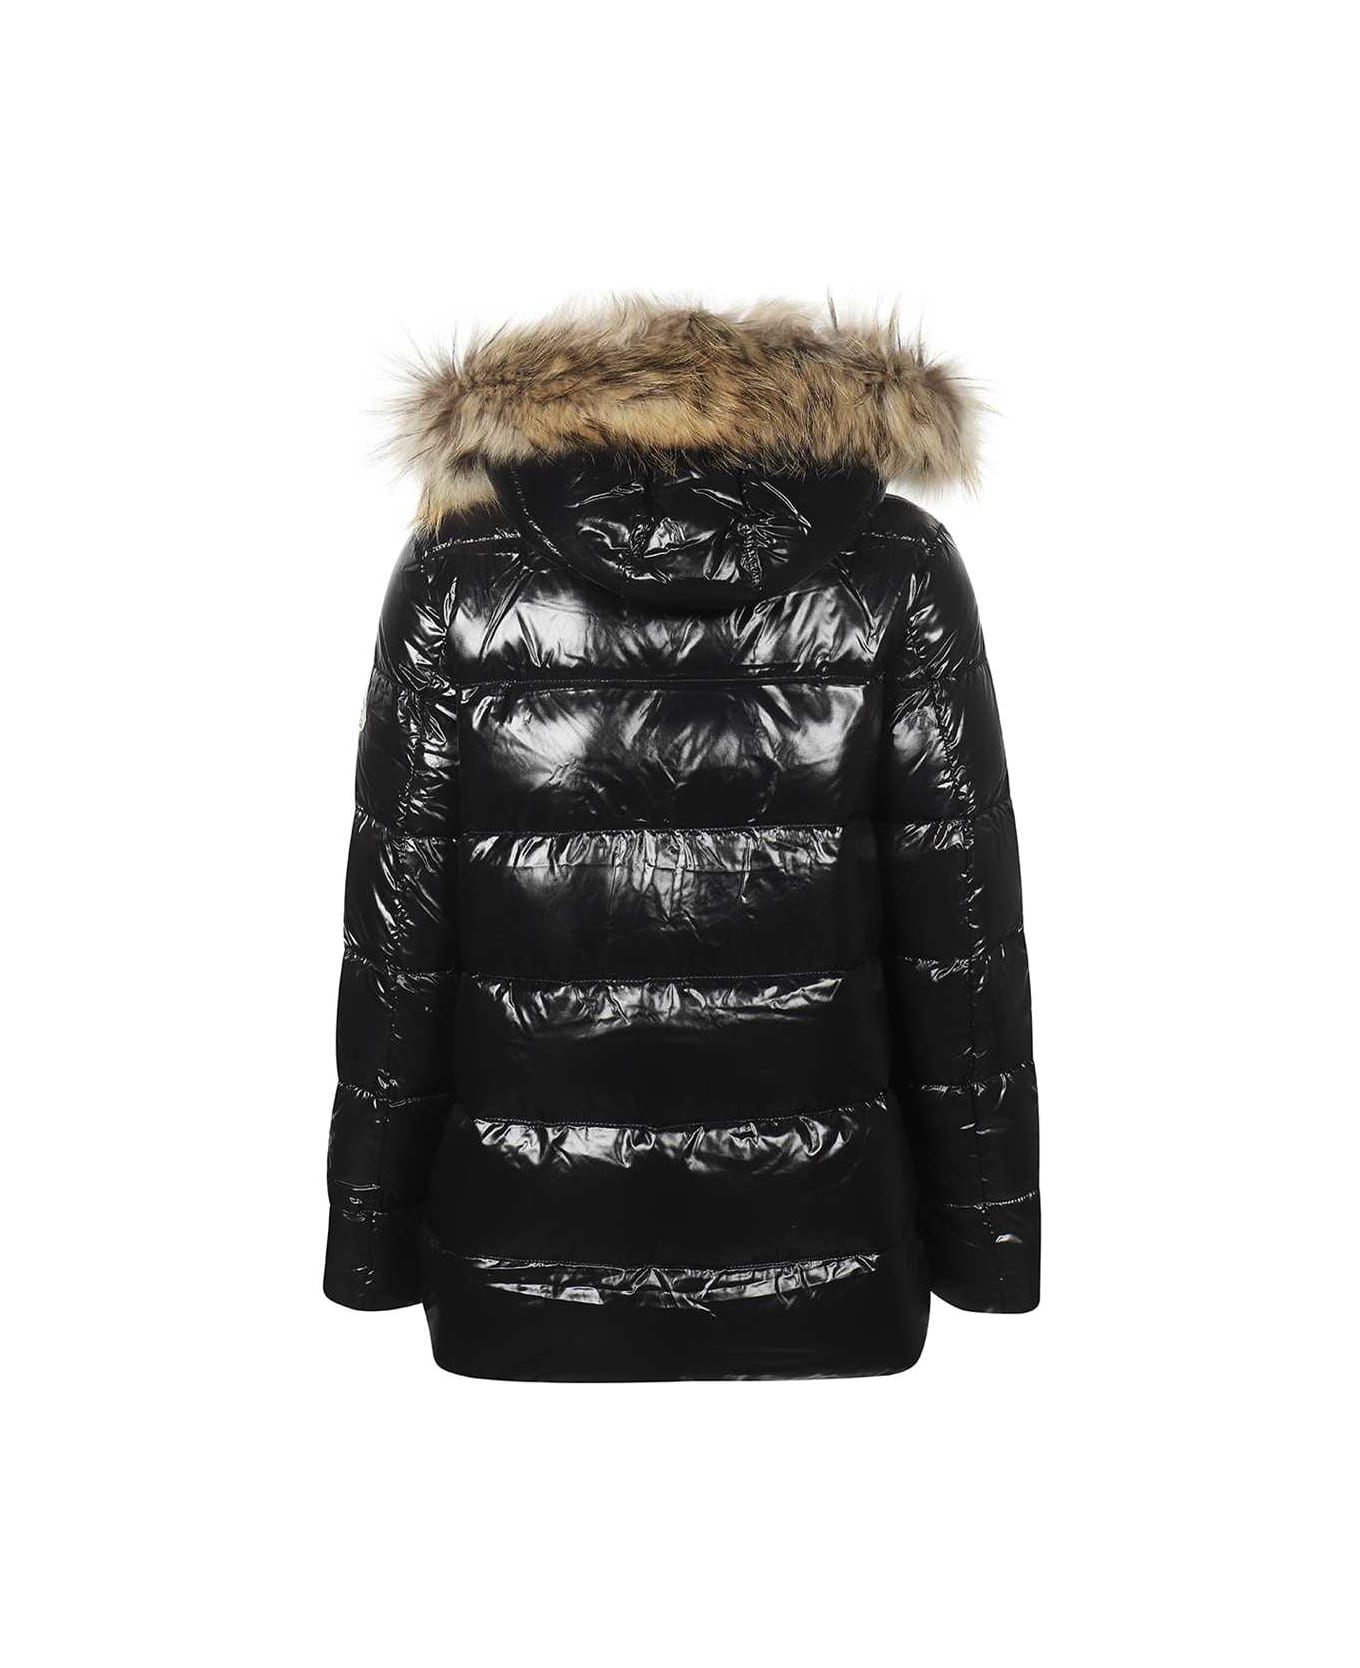 Pyrenex Fur Trimmed Hood Down Jacket - black